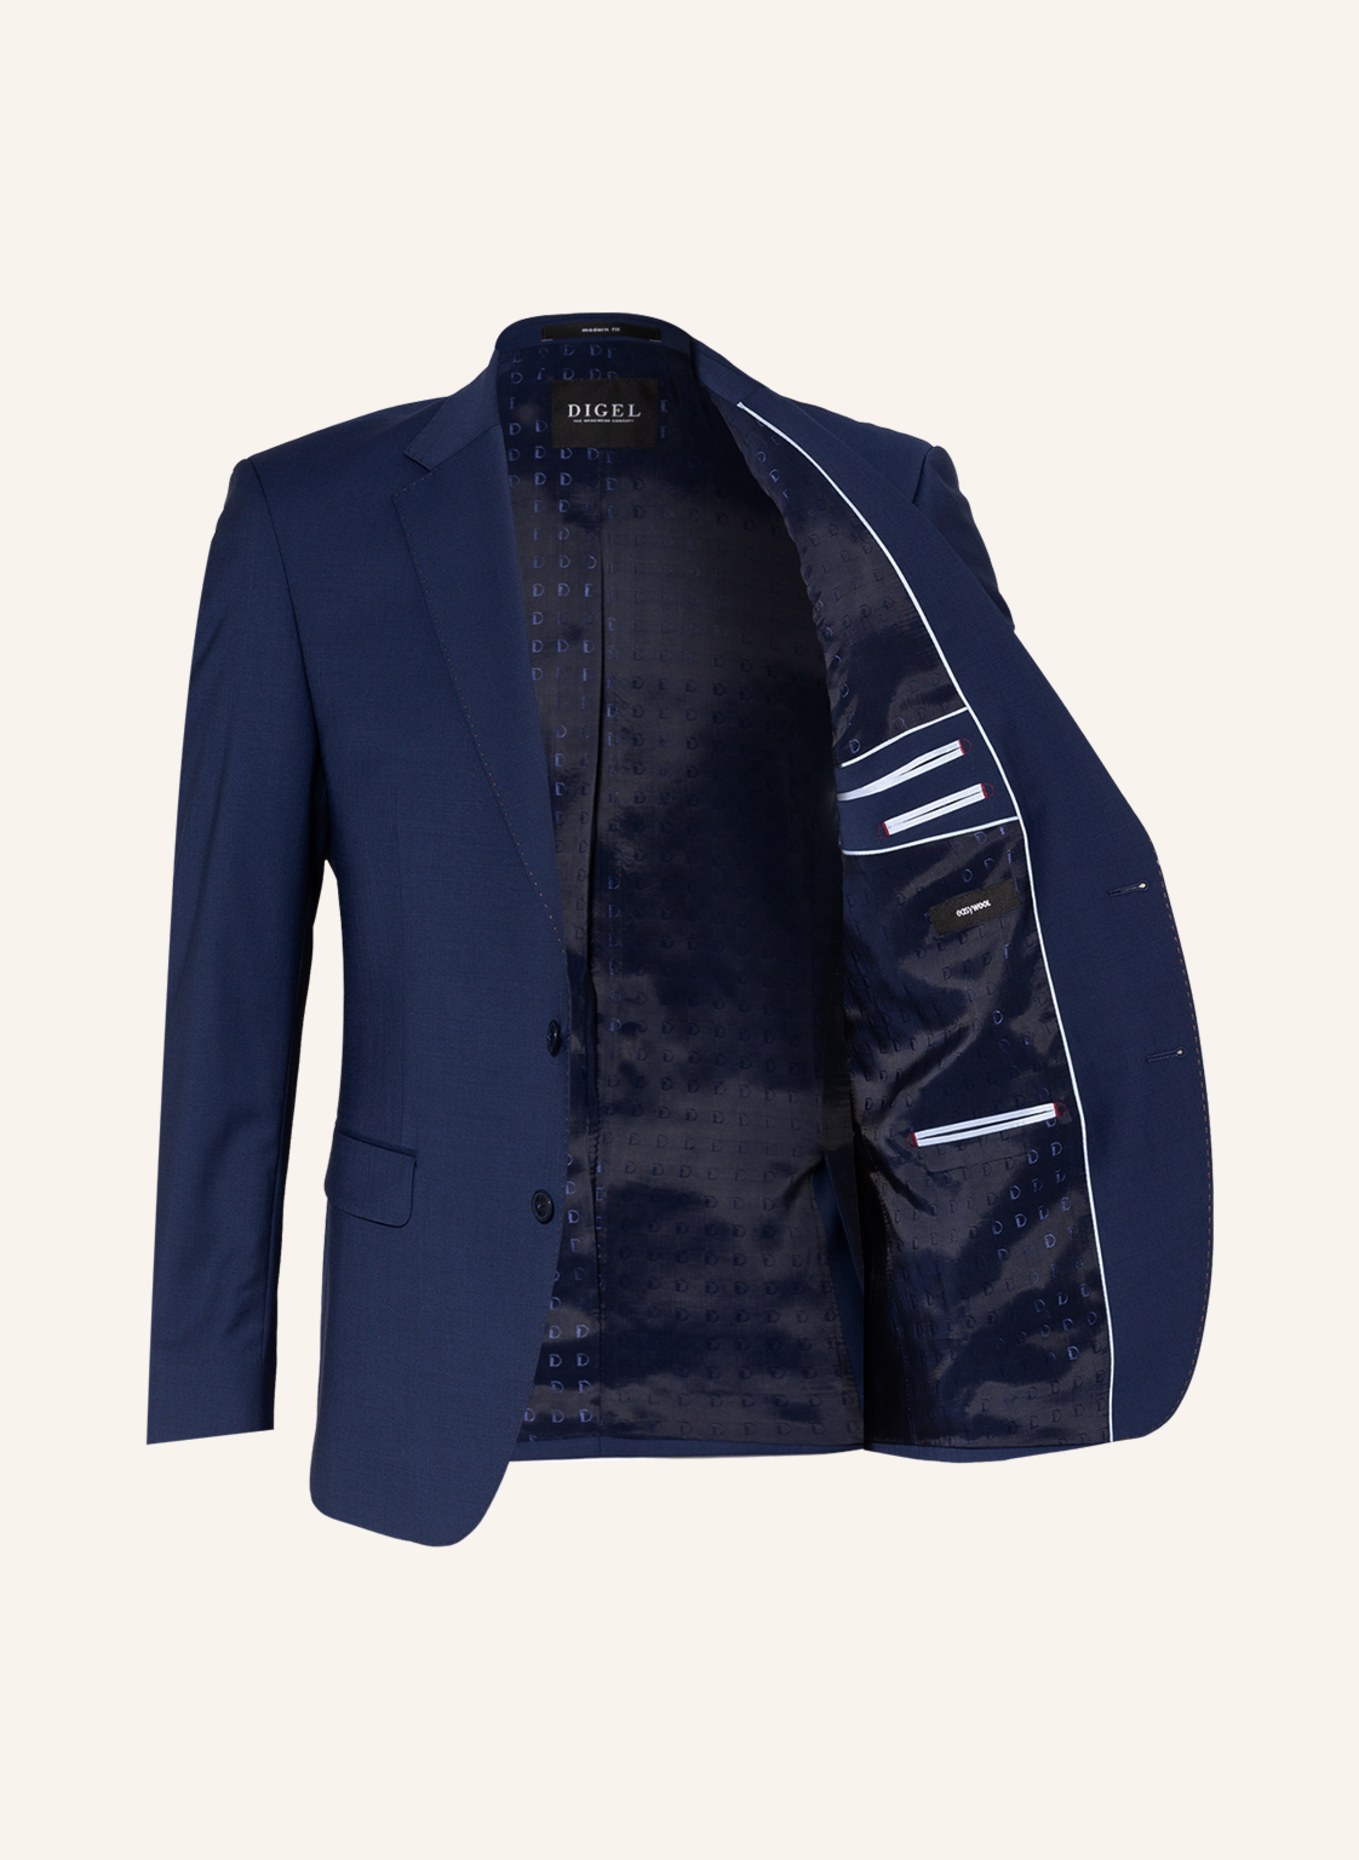 DIGEL Suit jacket DUNCAN regular fit , Color: 24 BLAU (Image 4)